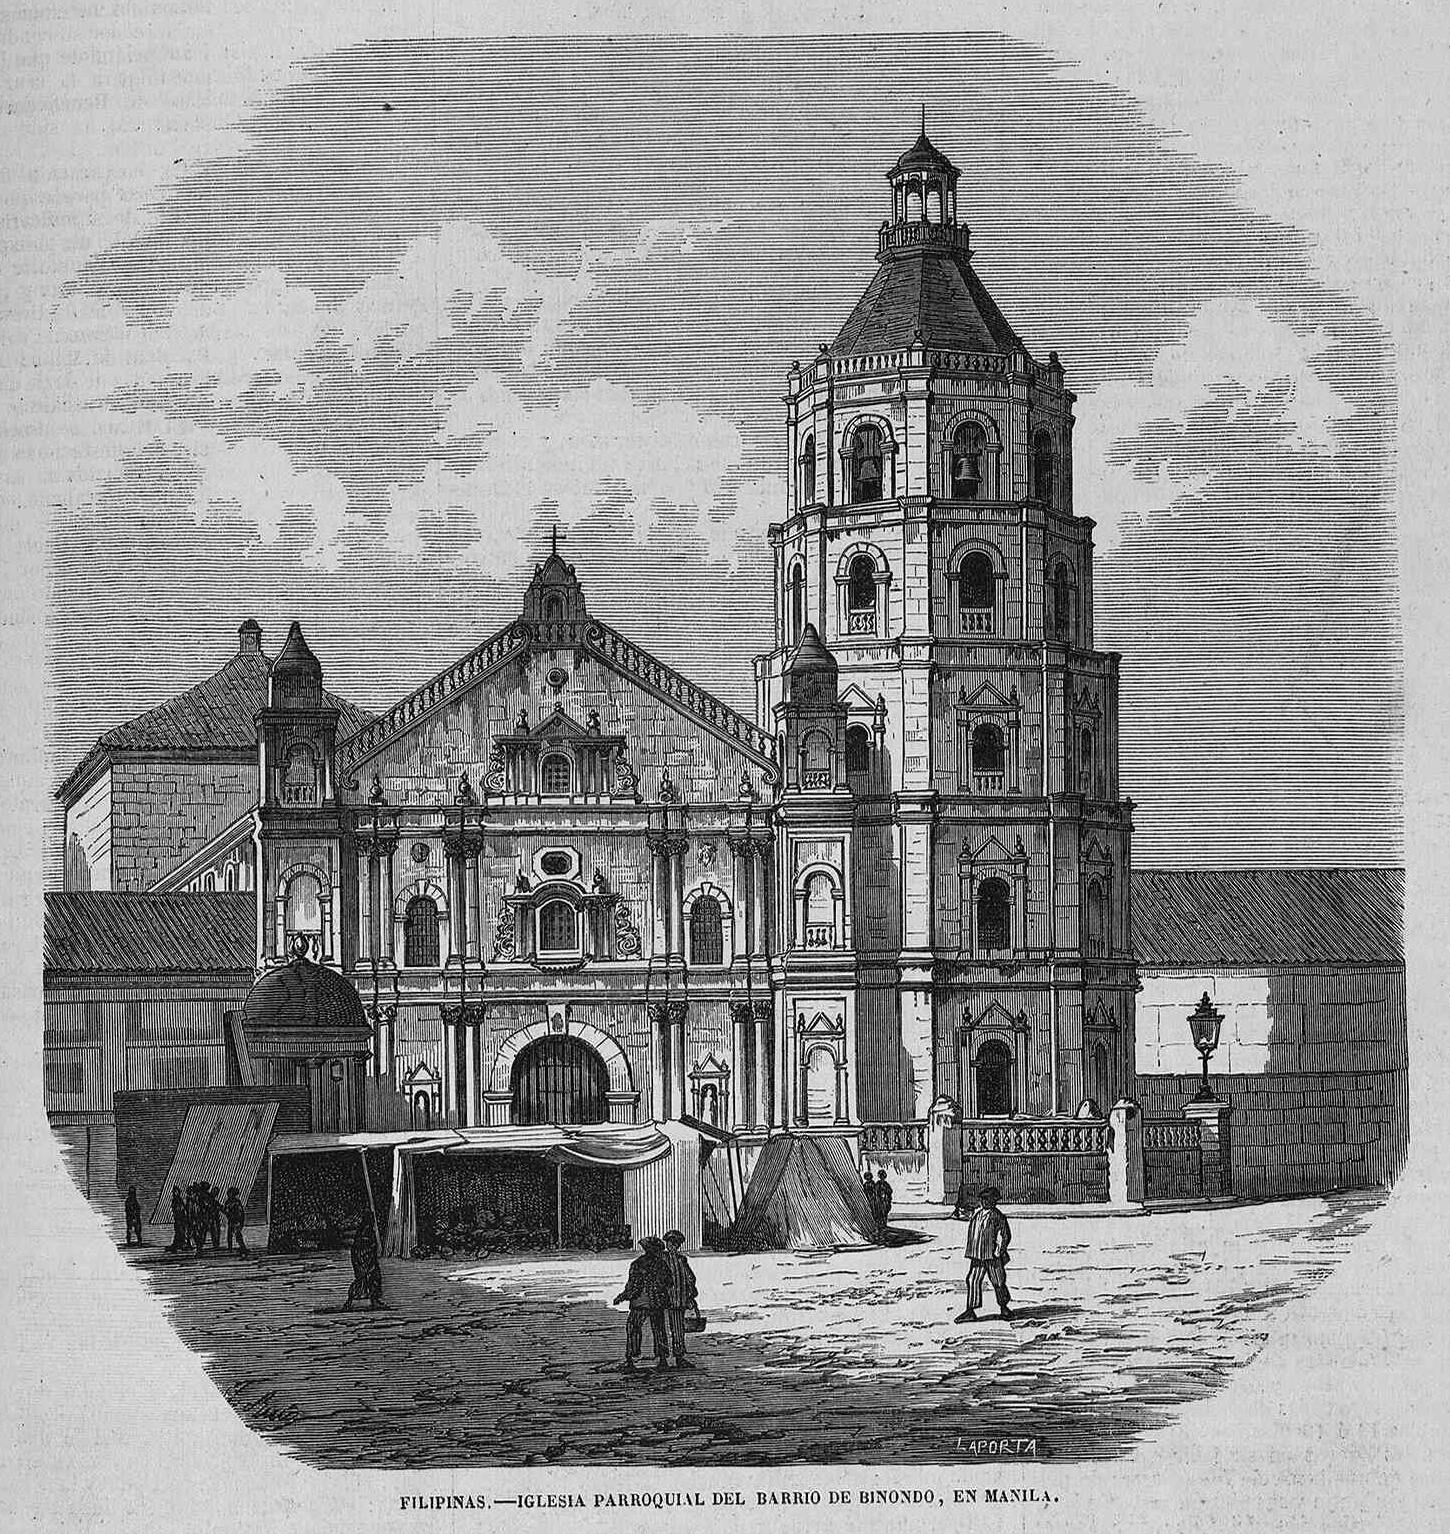 Iglesia parroquial del barrio de Binondo, Manila, en la revista española El Museo Universal.